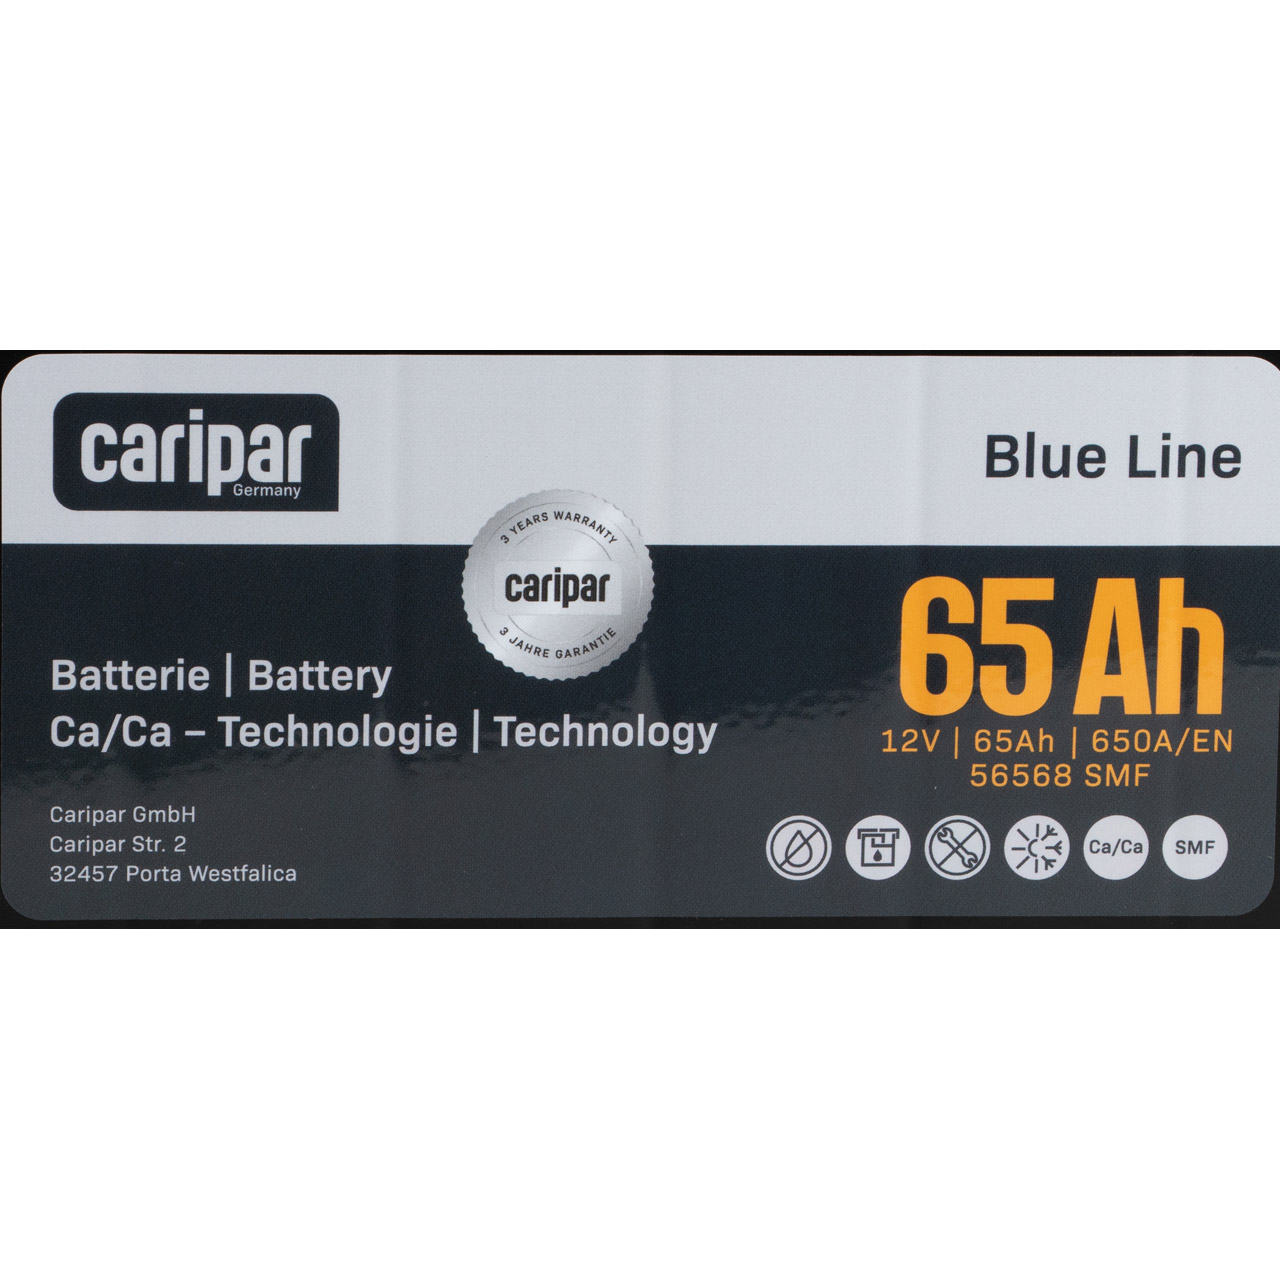 CARIPAR BLUE LINE ASIA PKW KFZ Autobatterie Starterbatterie 12V 65Ah 650A/EN B0